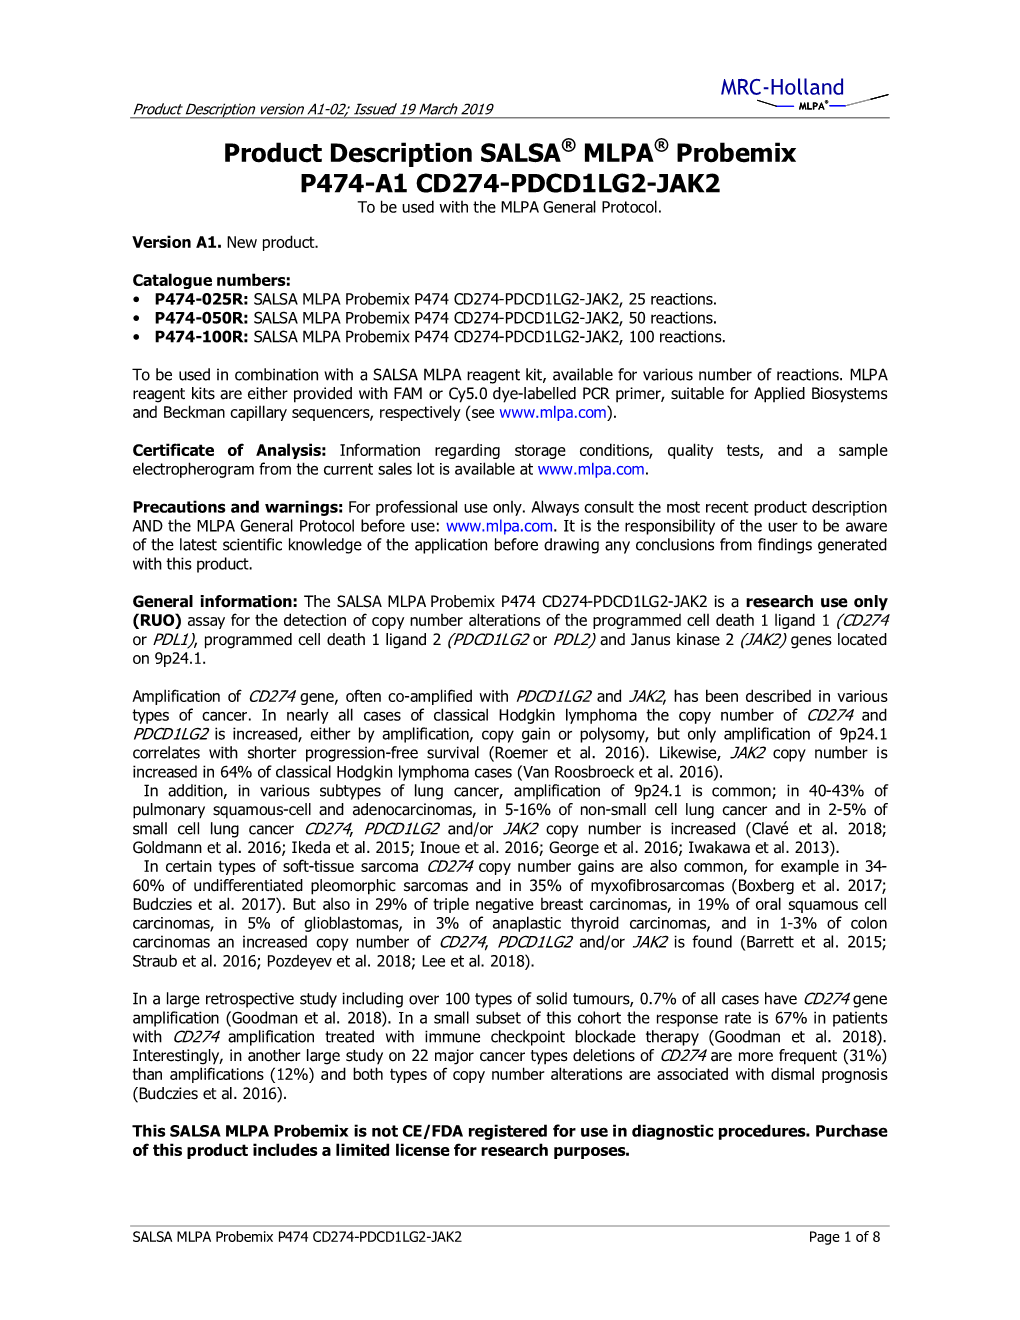 Product Description SALSA MLPA Probemix P474-A1 CD274